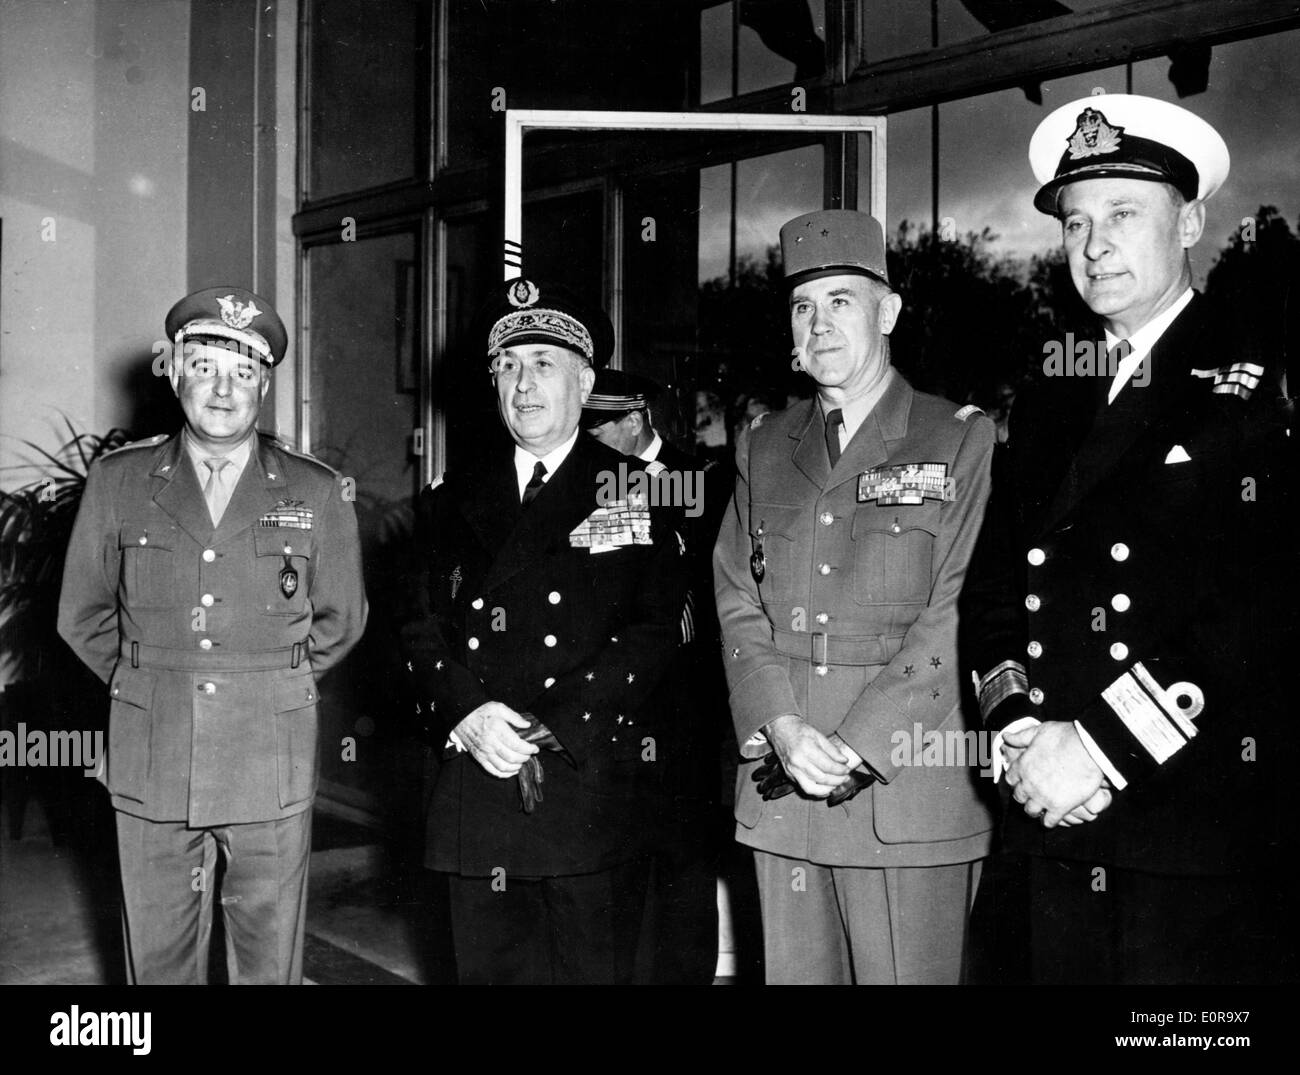 Nov 06, 1958 ; Paris, France ; le Vice-amiral PIERRE BARJOT, Marine Nationale, récemment nommé sous-marine, le grand quartier général des puissances alliées en Europe,était à jour, accueilli à son arrivée au quartier général militaire de l'international par les hauts dirigeants. forme Le Vice-amiral Barjot remplacera l'amiral Antoine L.M. Sala, Marine française, qui a pris sa retraite à façonner le 31 octobre 1958. La photo montre à partir de la L-R : EZIO Général PISTOTTI, armée d'Italie, représentant militaire national, le Vice-amiral Barjot, le Major Général J.M.P. GAZOUNA UD, Armée française, et le contre-amiral Nigel S. HENDERSON, Marine royale. Banque D'Images